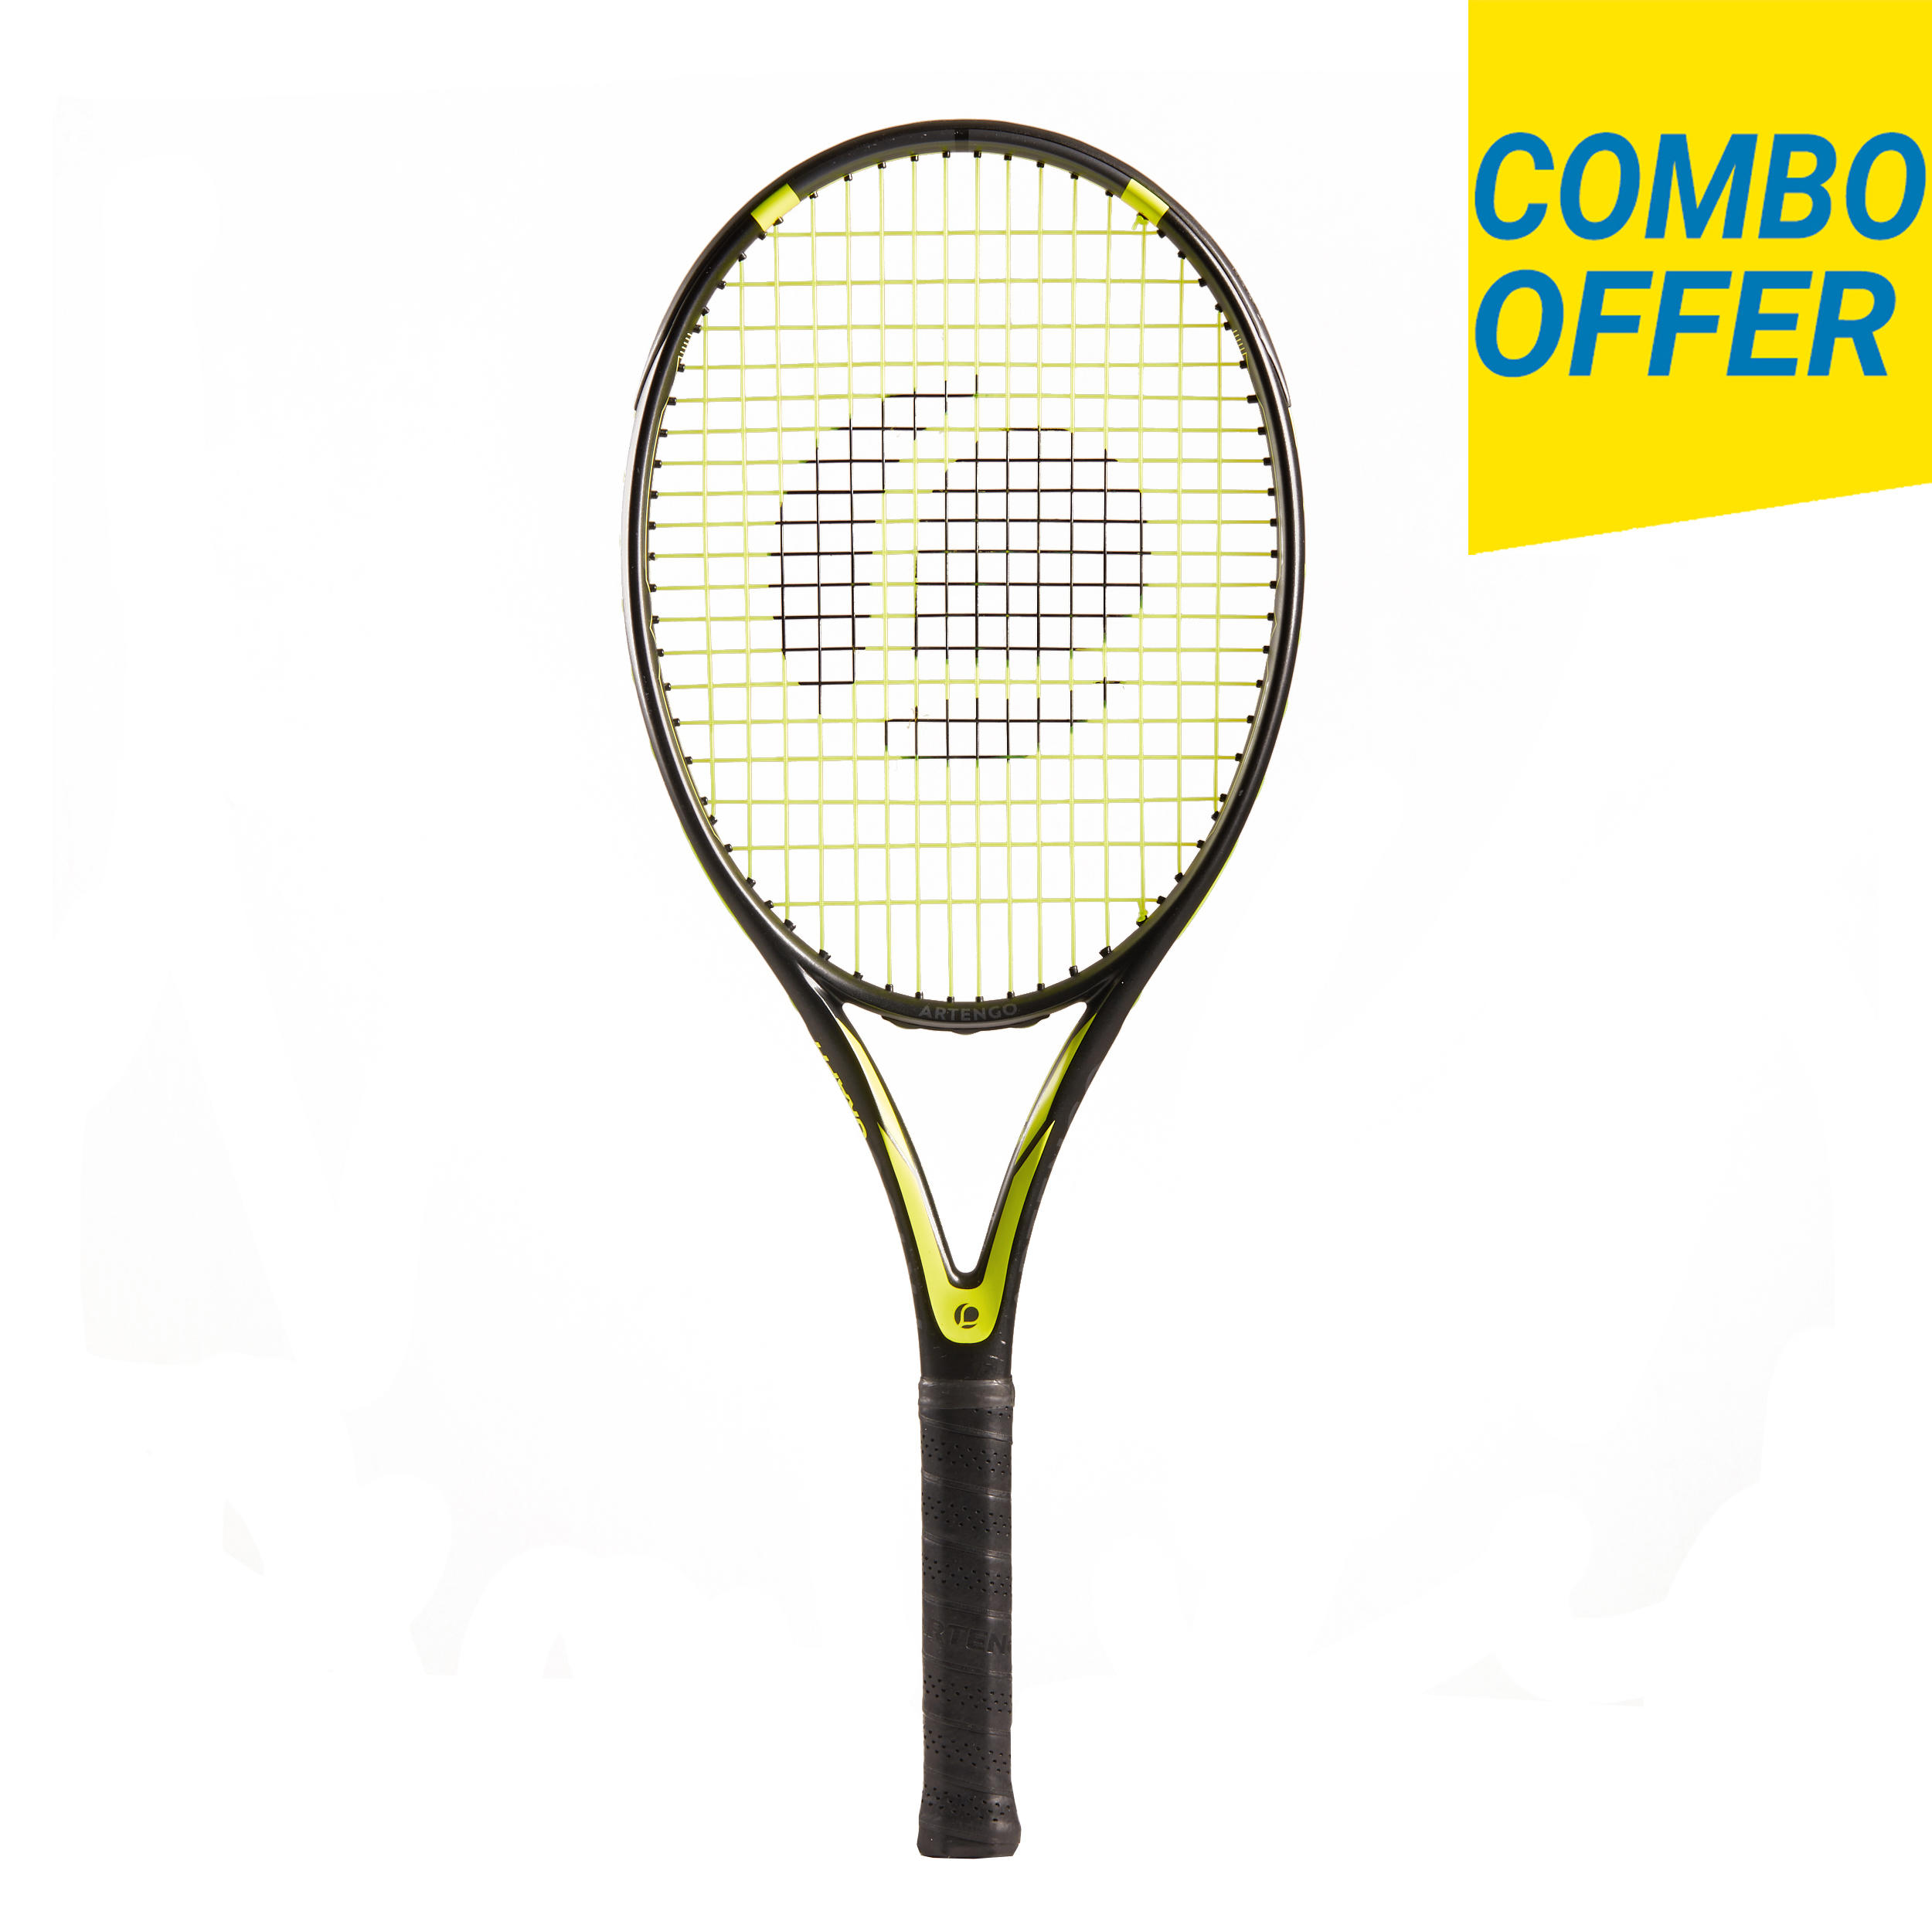 Buy Tennis racket beginner full graphite